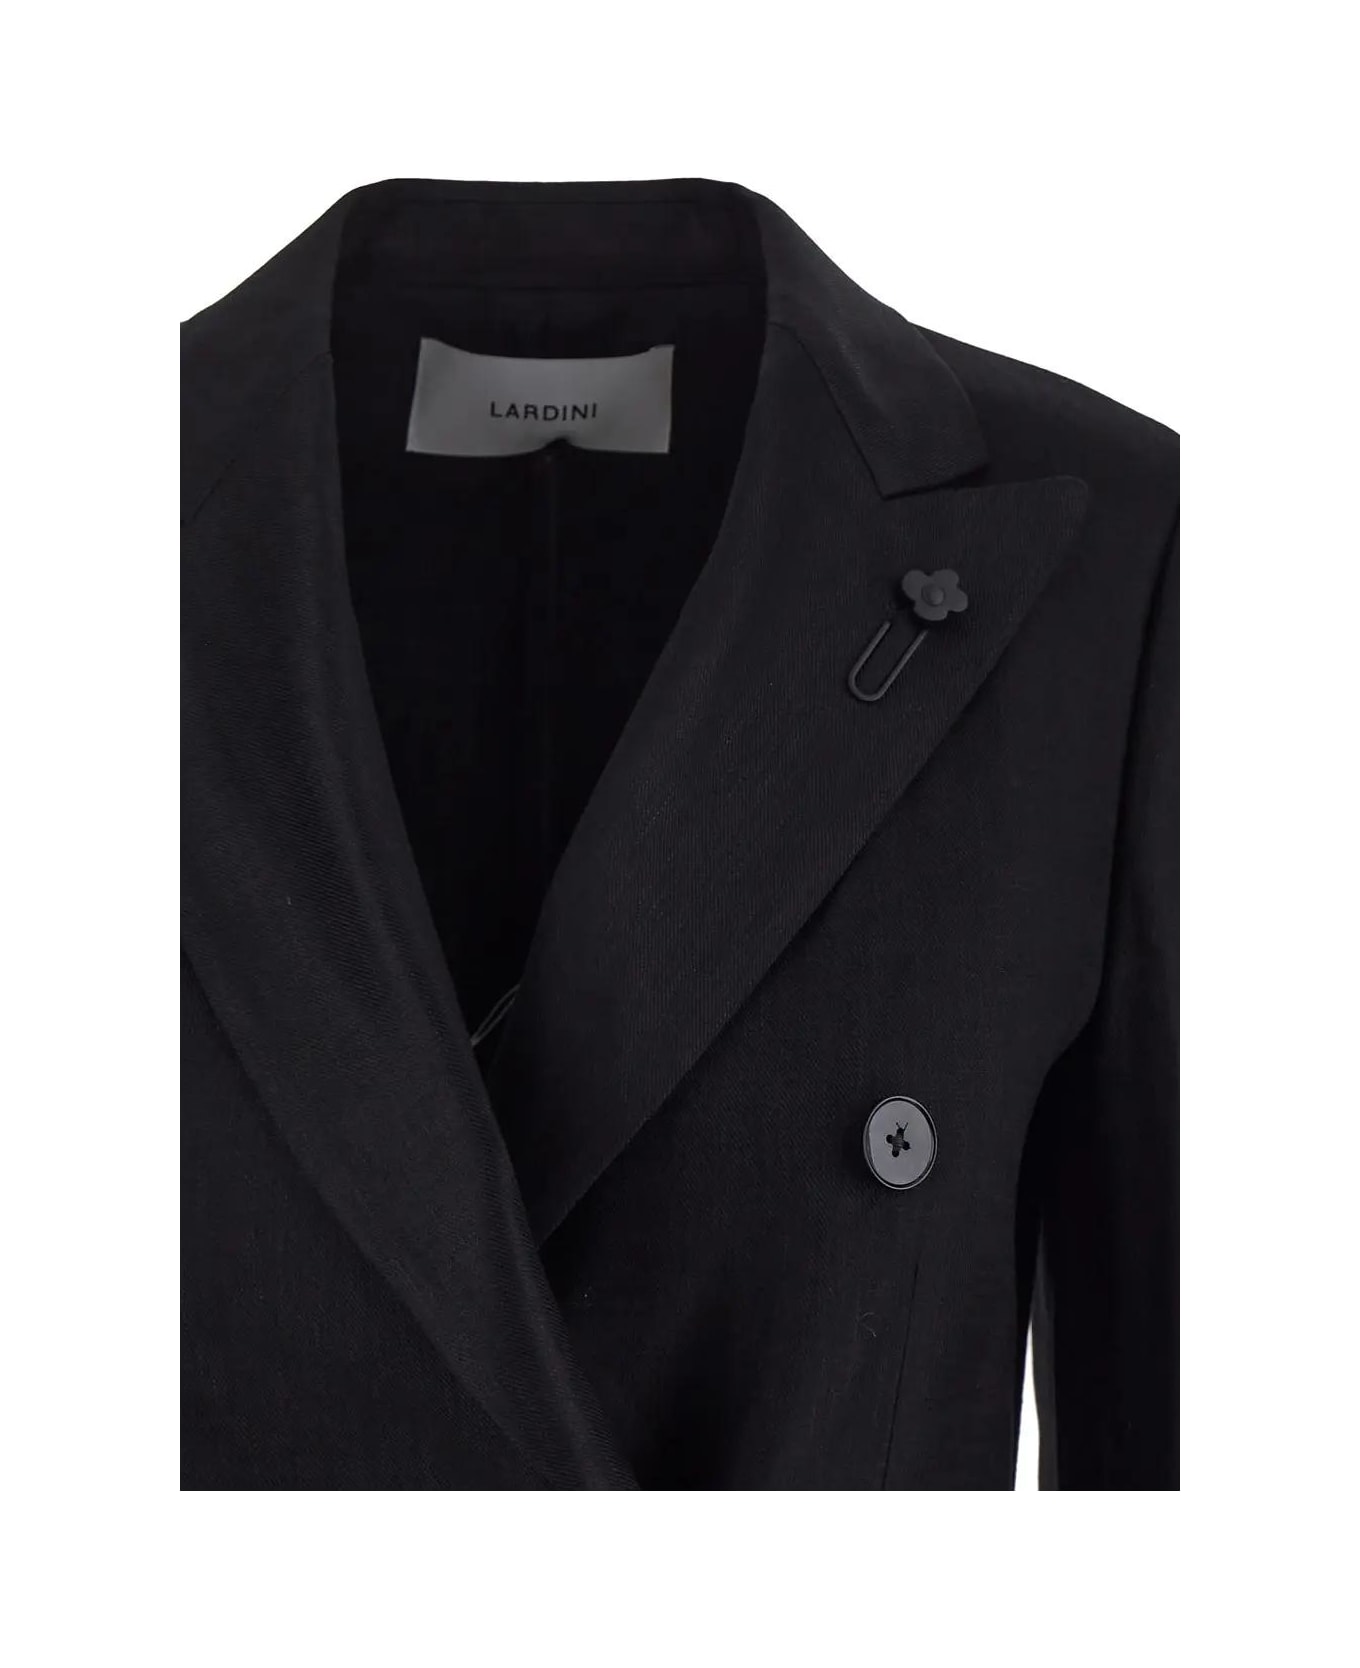 Lardini Double-breasted Jacket - Black コート